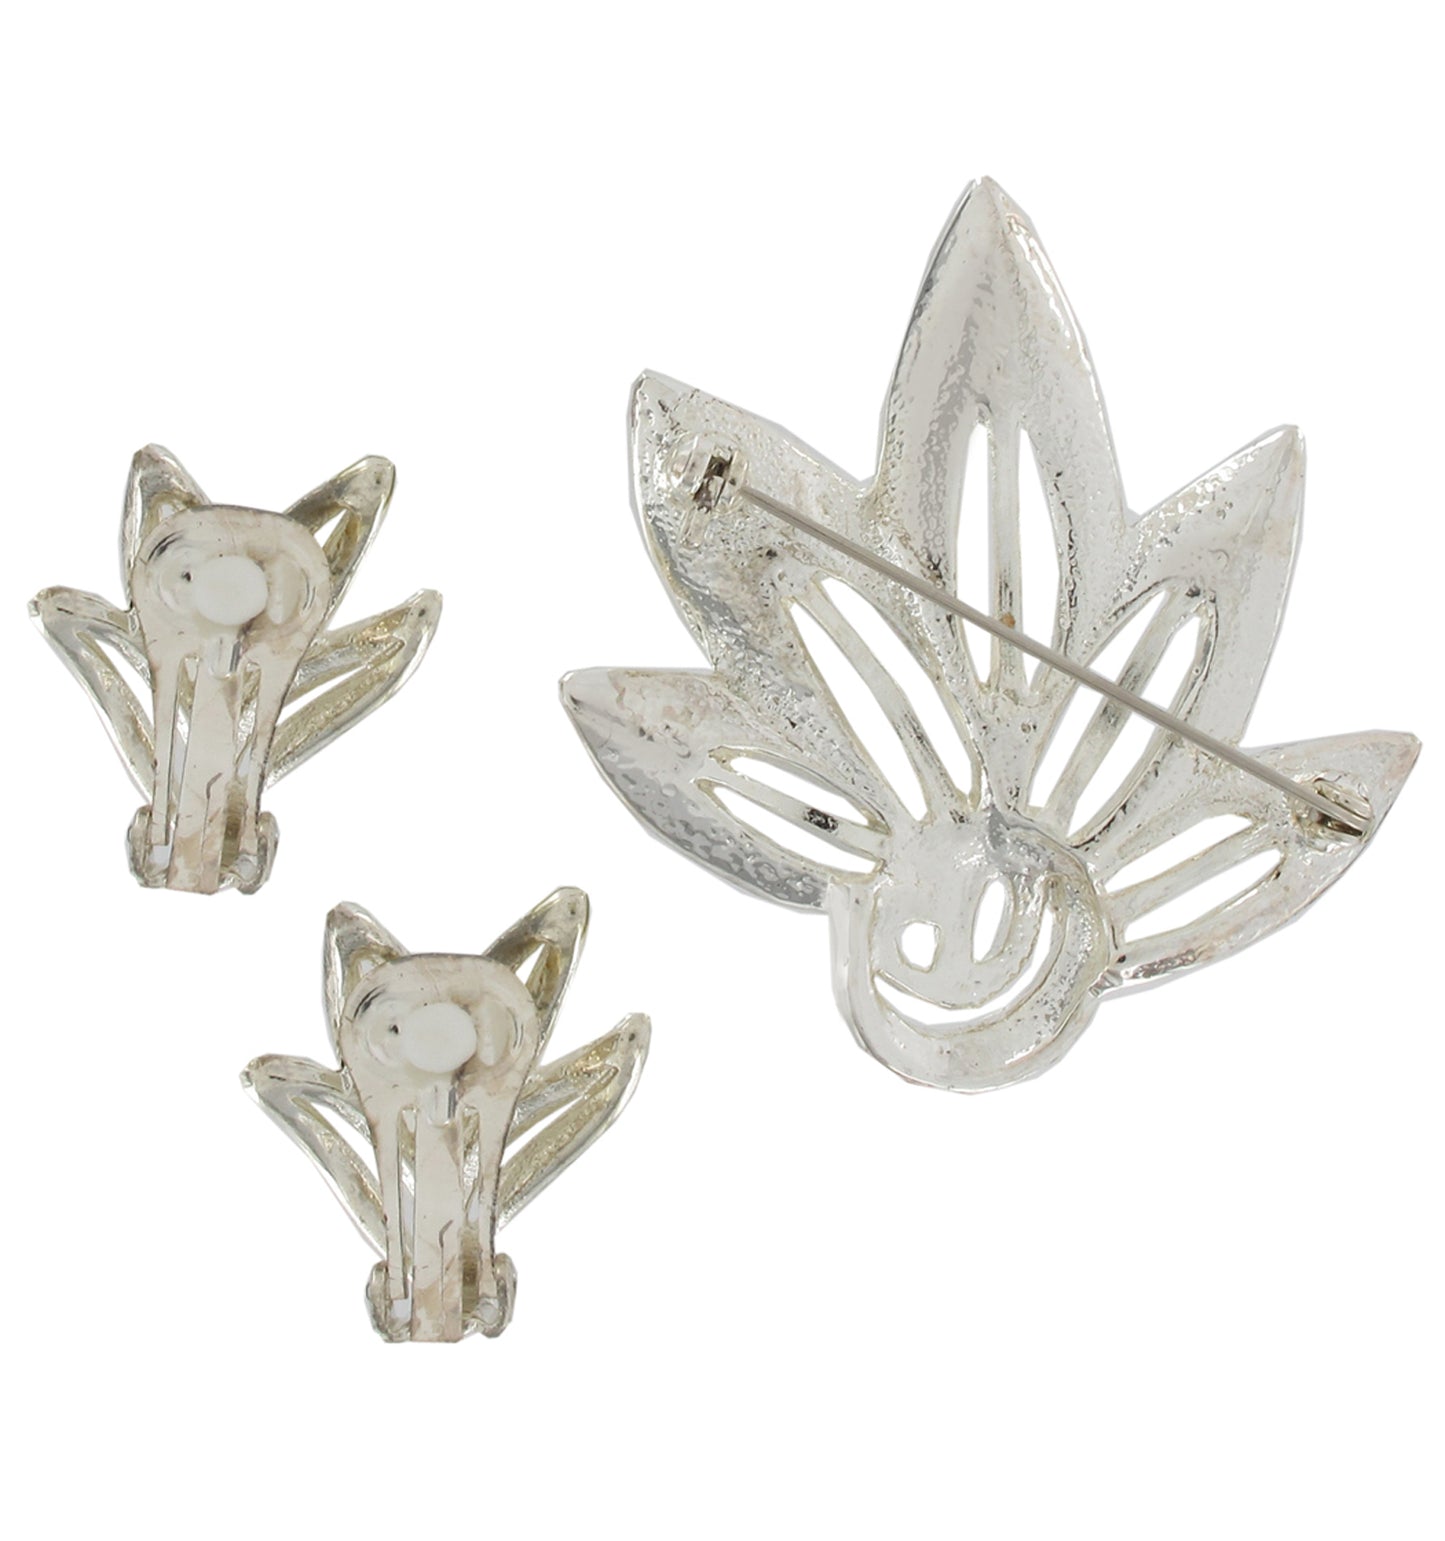 Silver Tone Leaf Clip On Earrings 1" + Pin Brooch 1 1/2" Jewelry Set